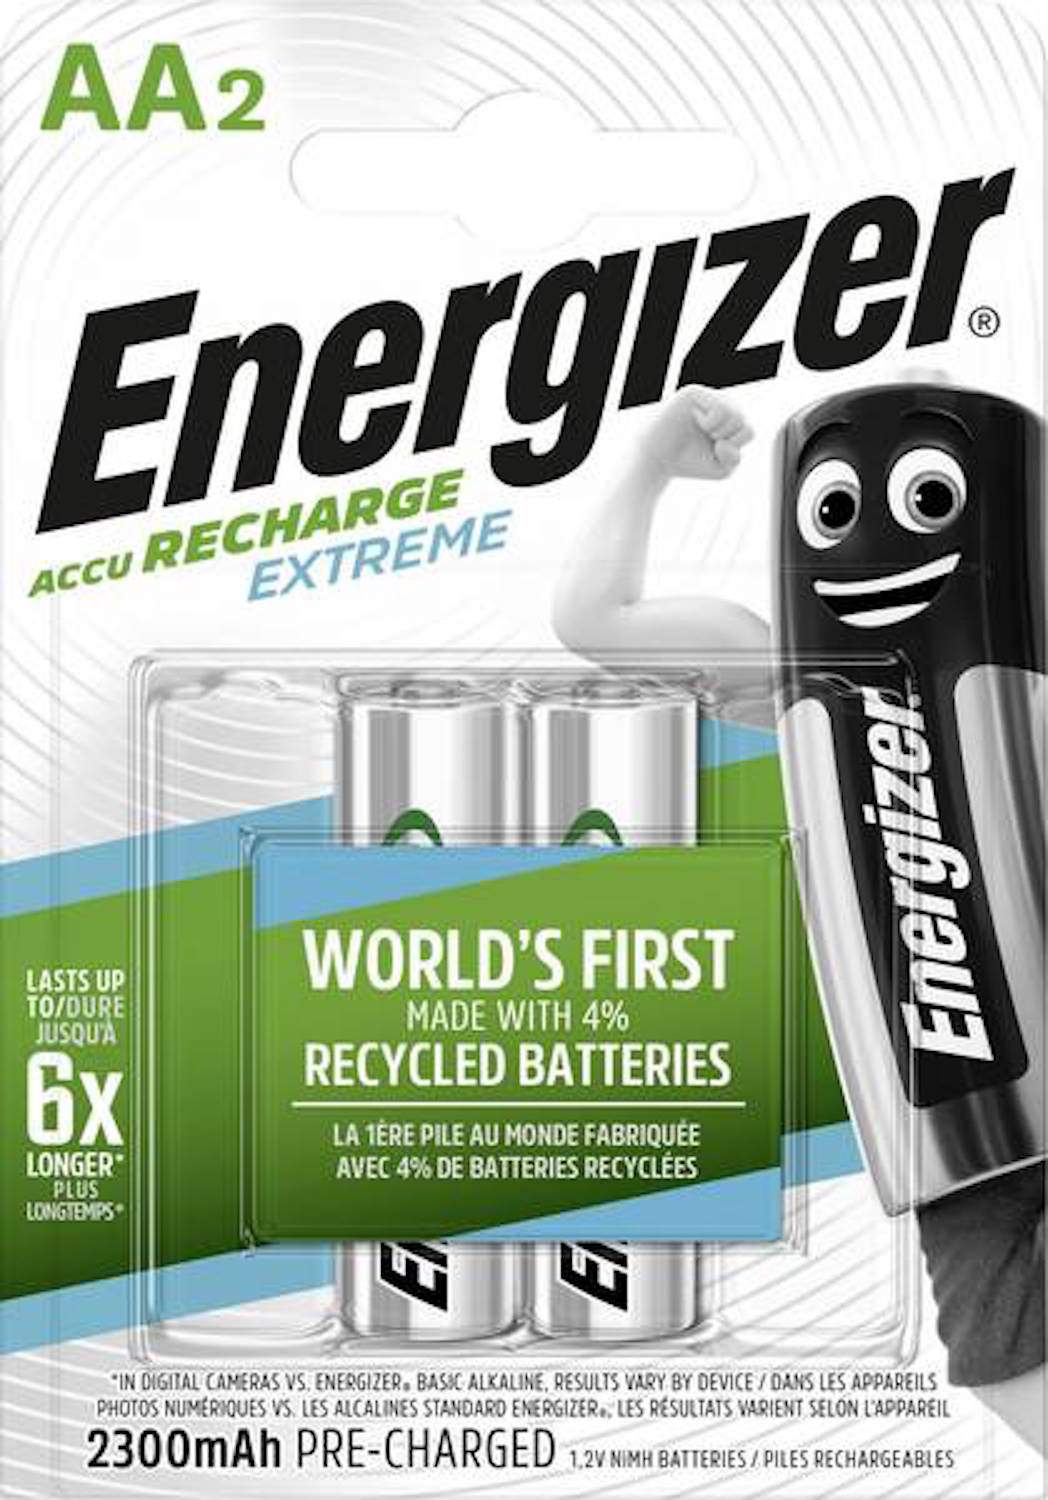 Energizer Rechargeable Extreme AA / HR6 2300mAh par 2